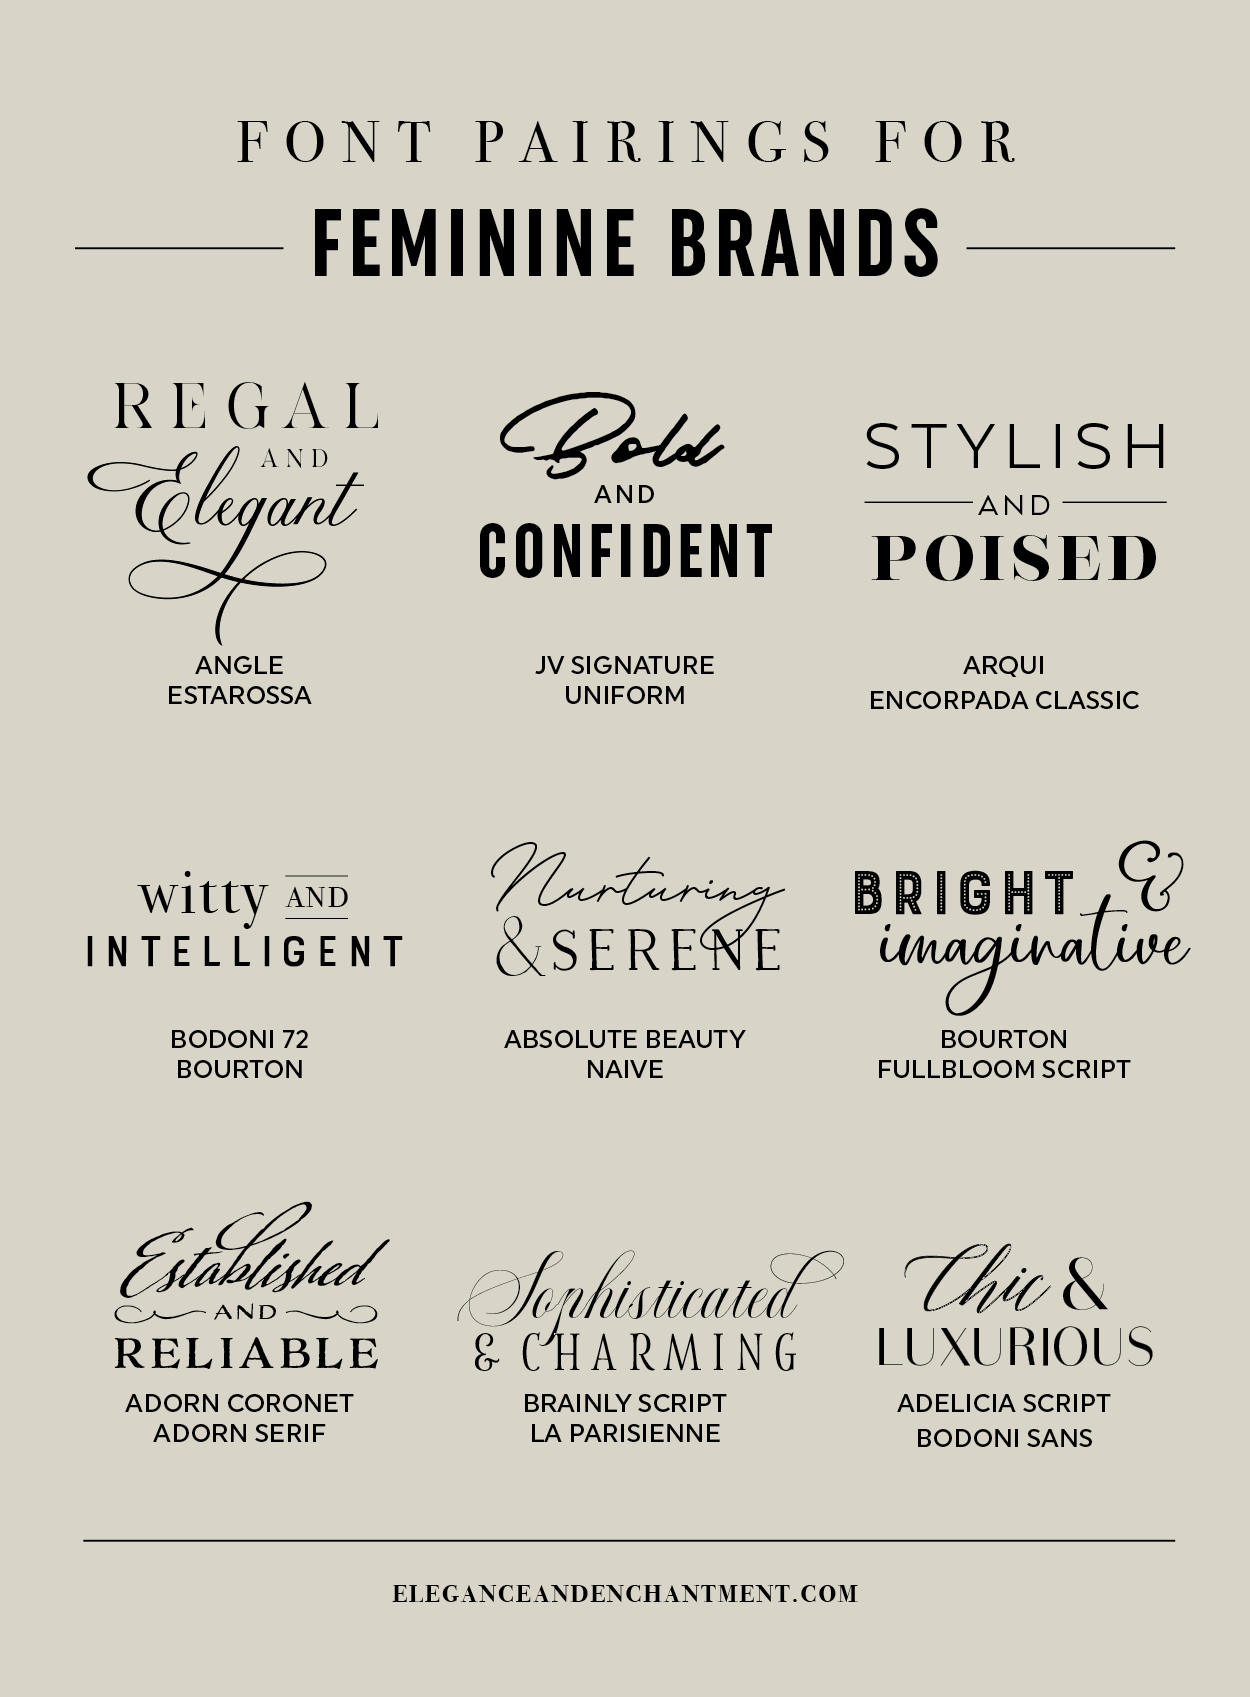 Font pairings for Feminine Brands